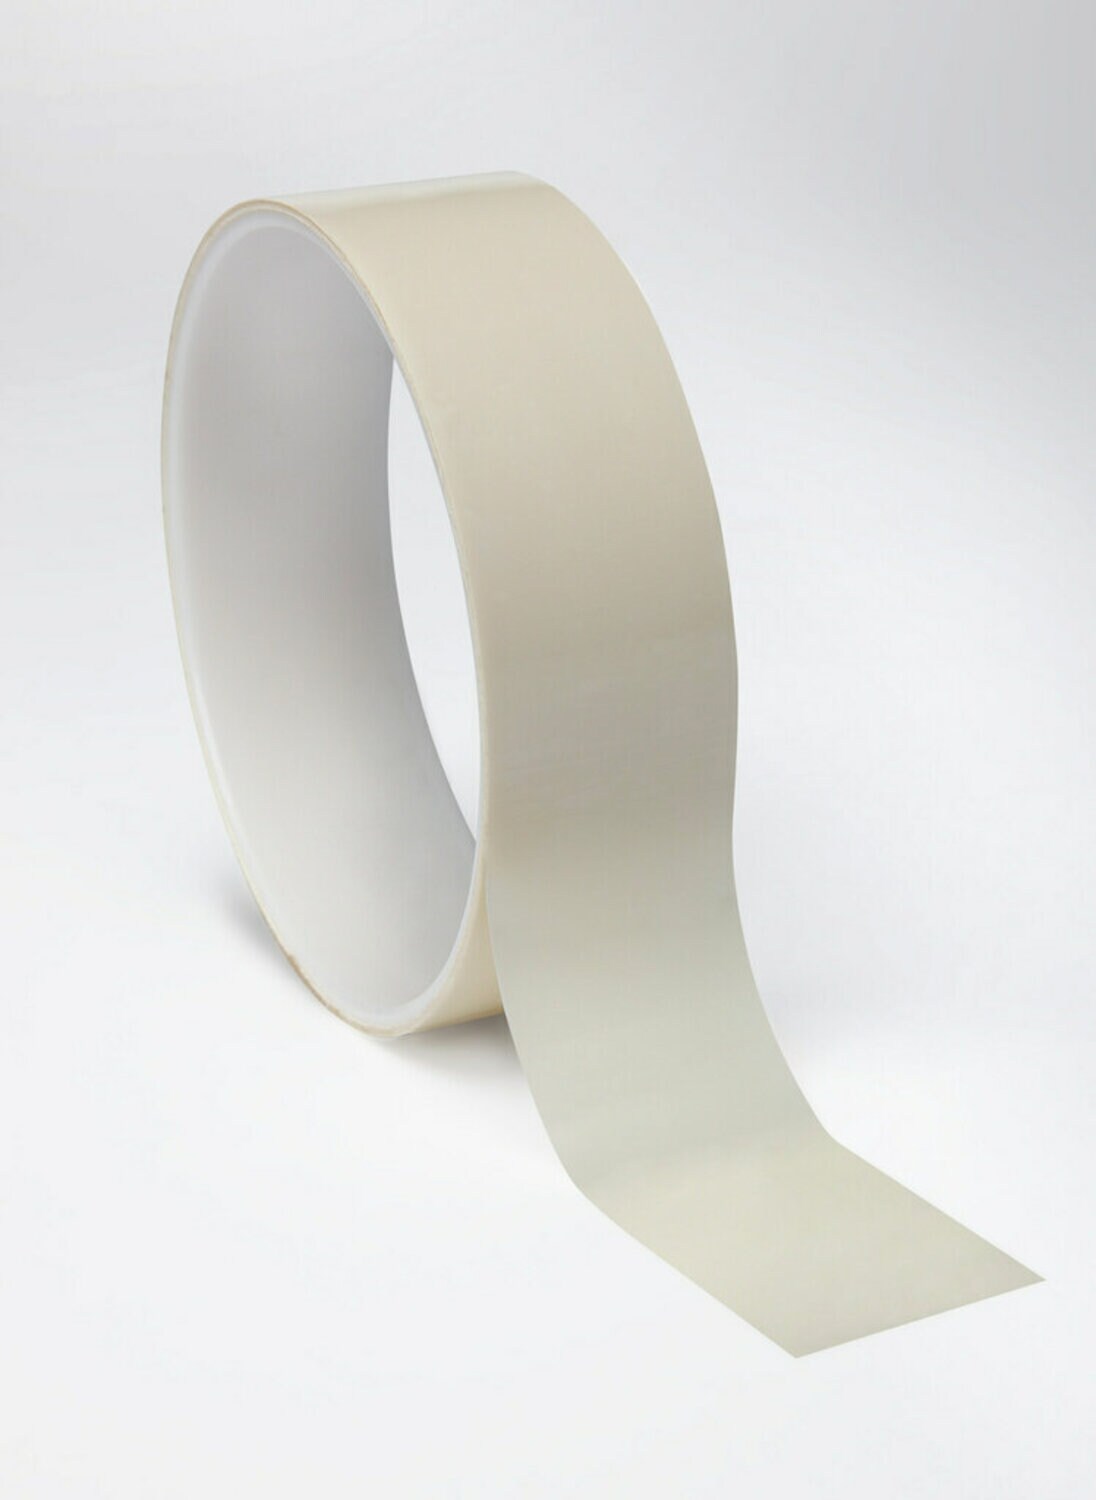 7010045167 - 3M Polyester Film Tape 854 White, 4 in x 72 yds, 2.7 mil, 8/Case, Bulk